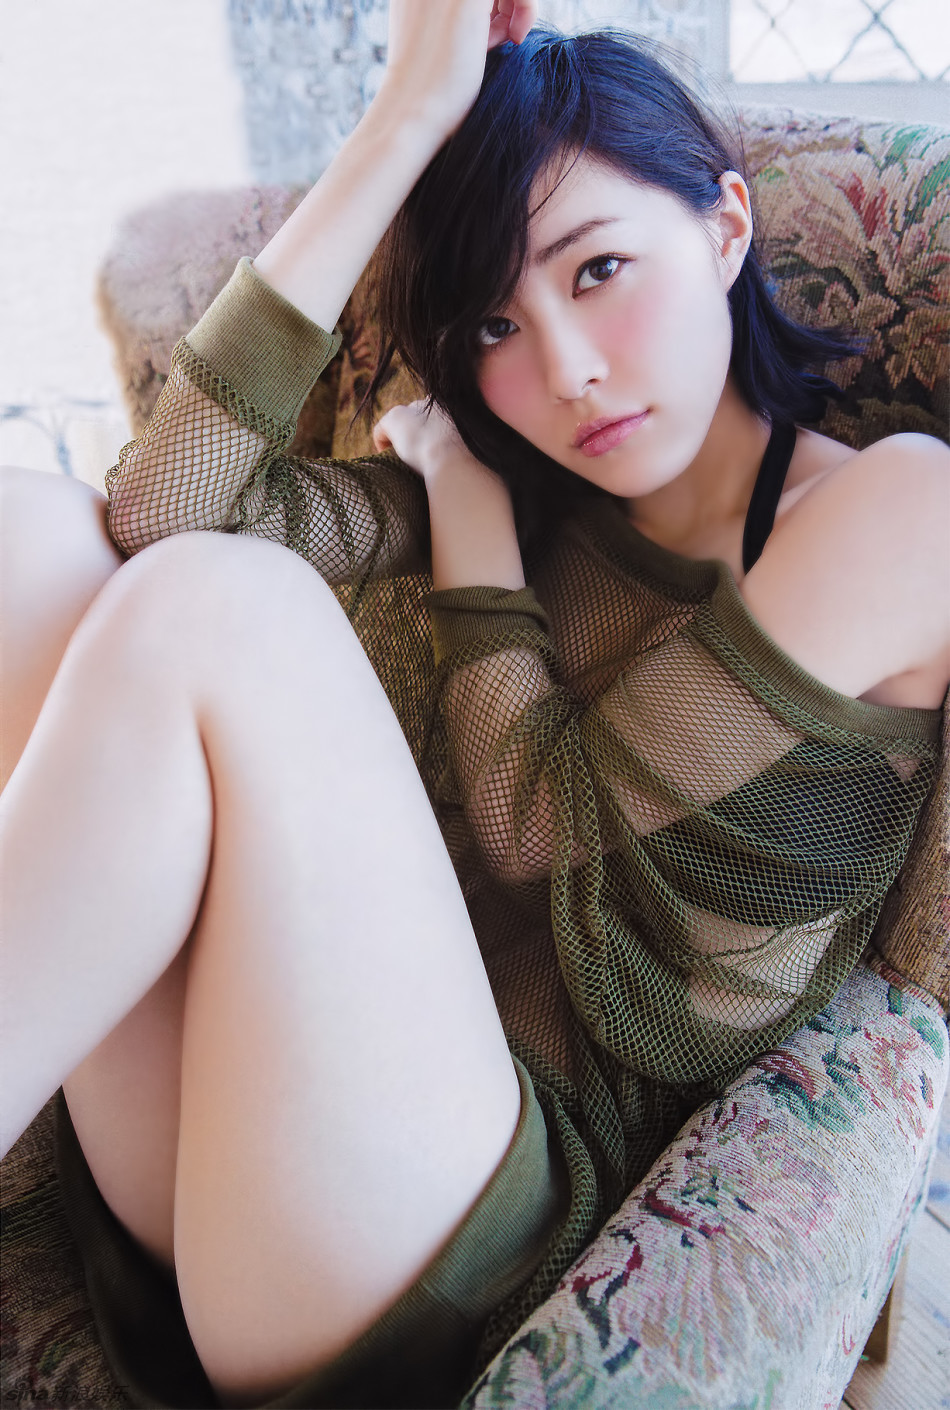 AKB48松井珠理奈性感写真 18岁少女身材完美